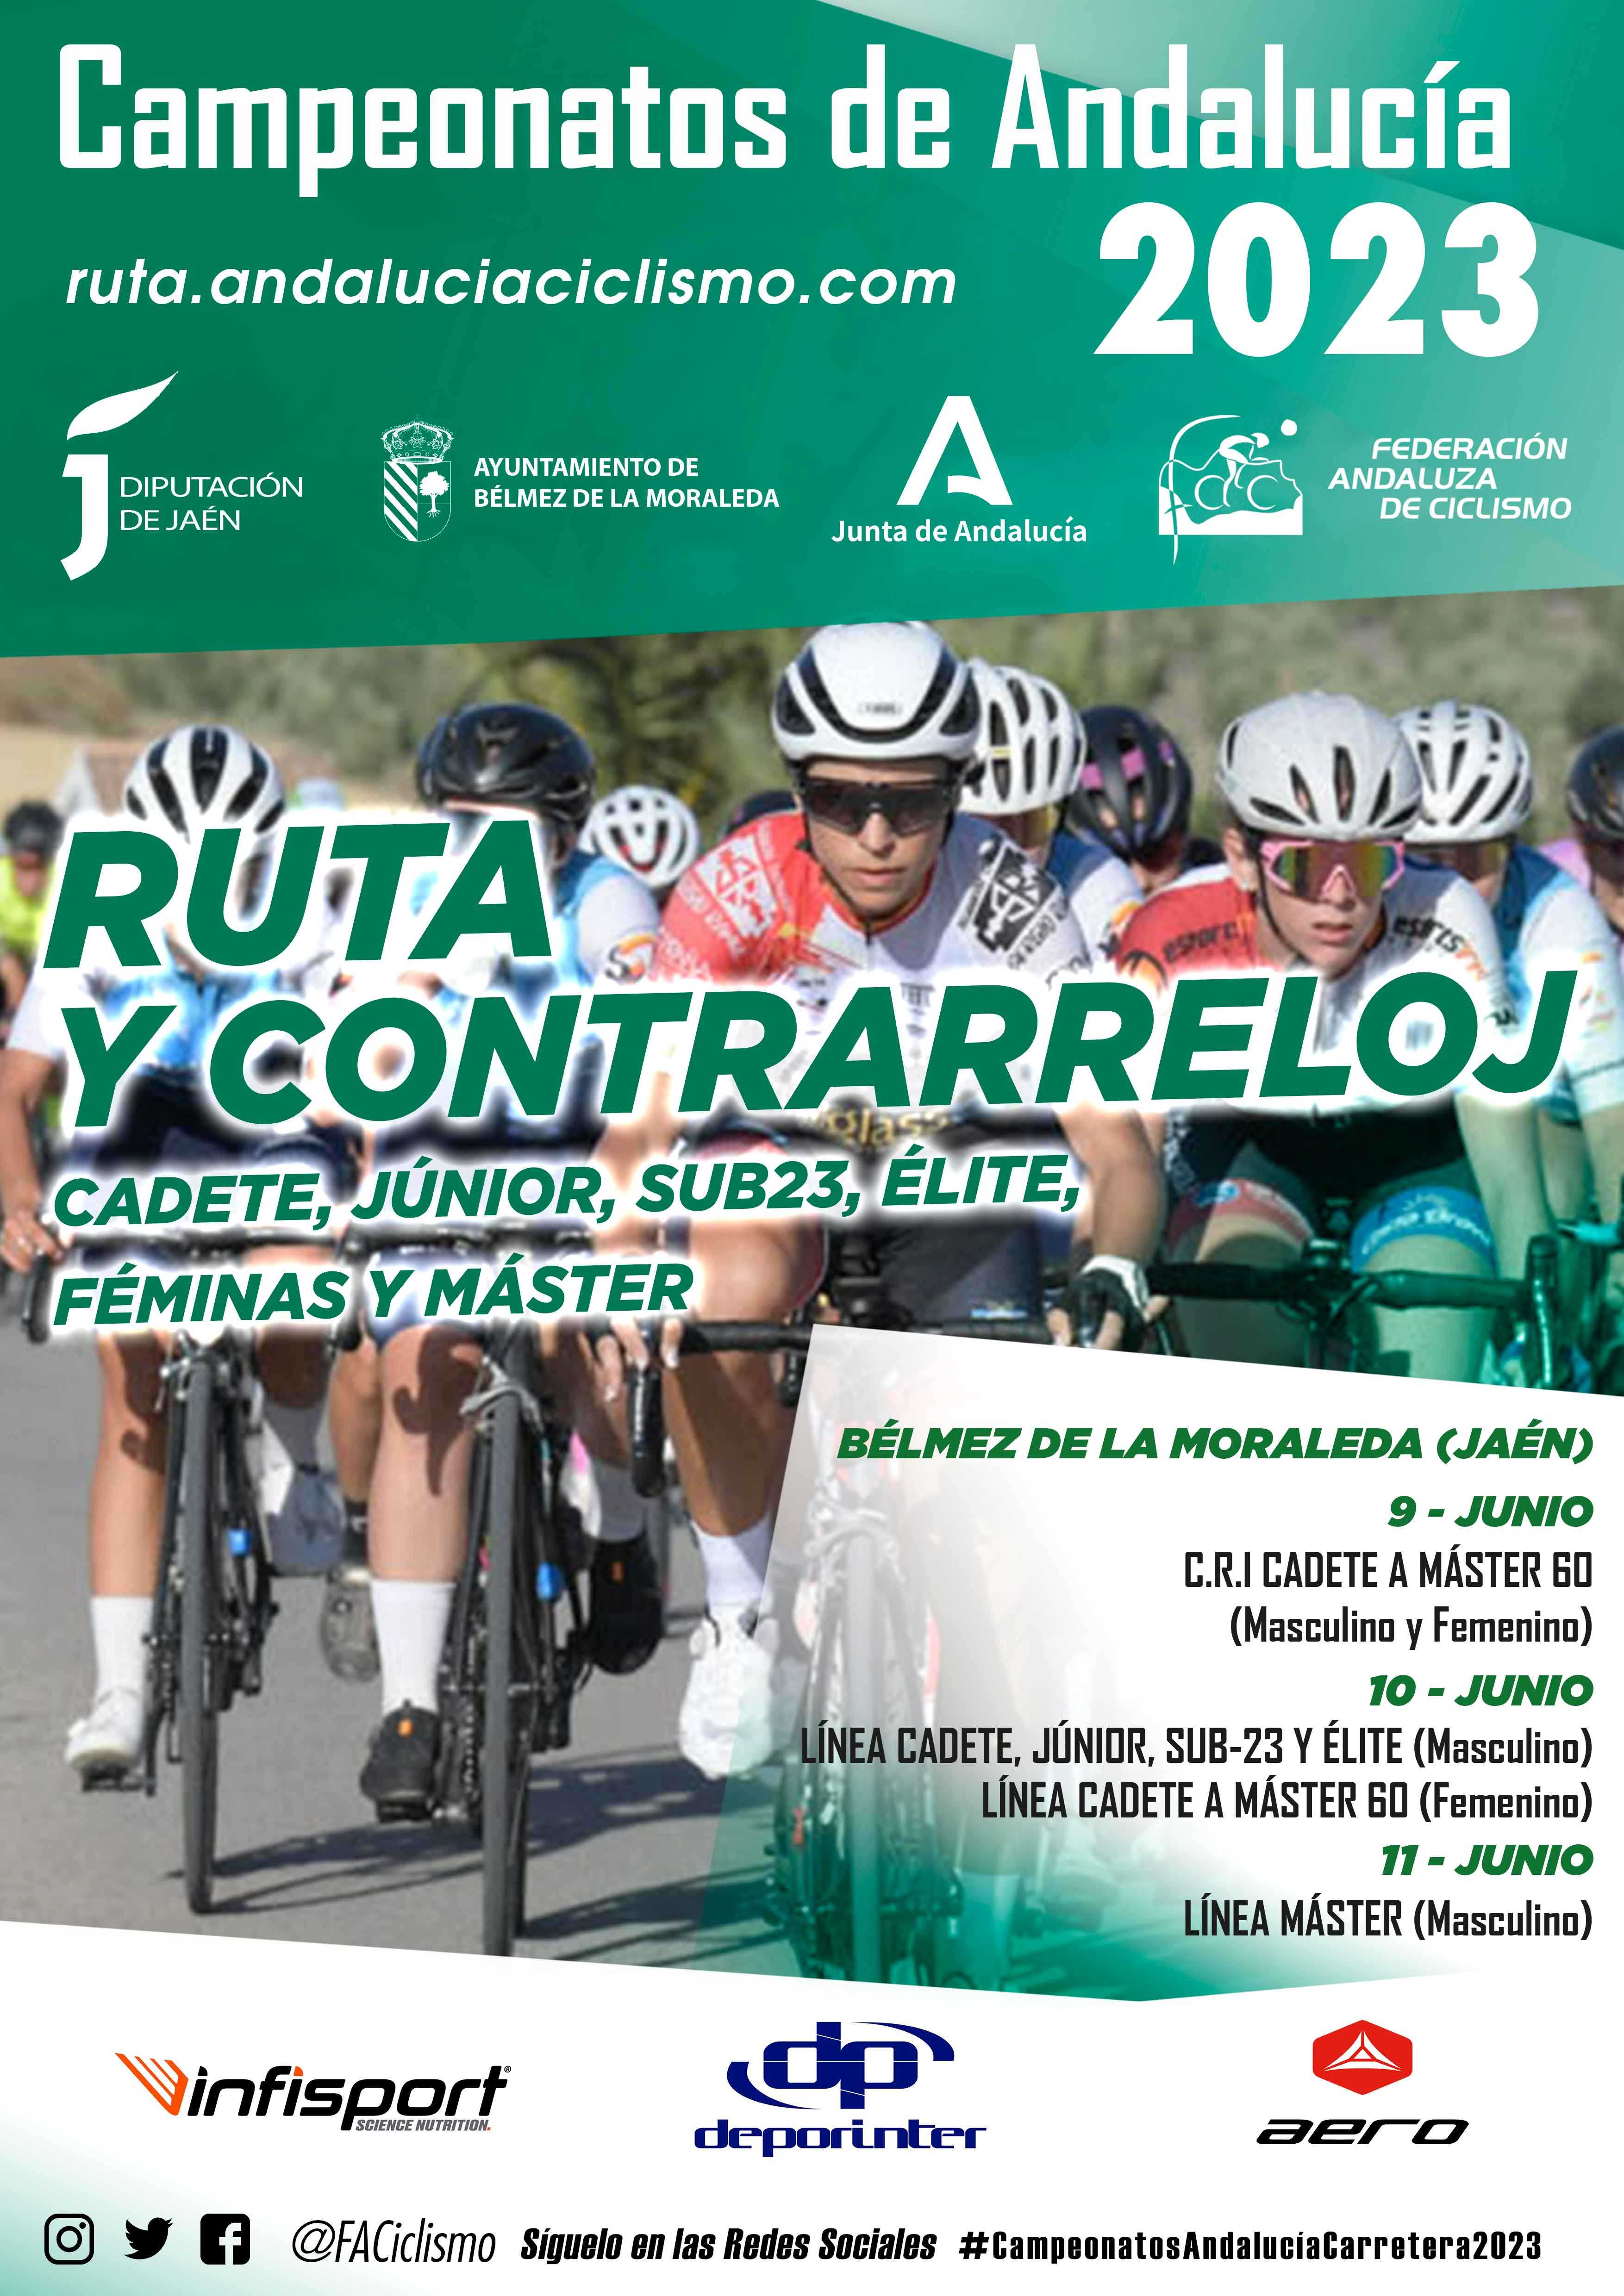 Cuenta atrás para los Campeonatos de Andalucía Ruta y Contrarreloj 2023 de Bélmez de la Moraleda